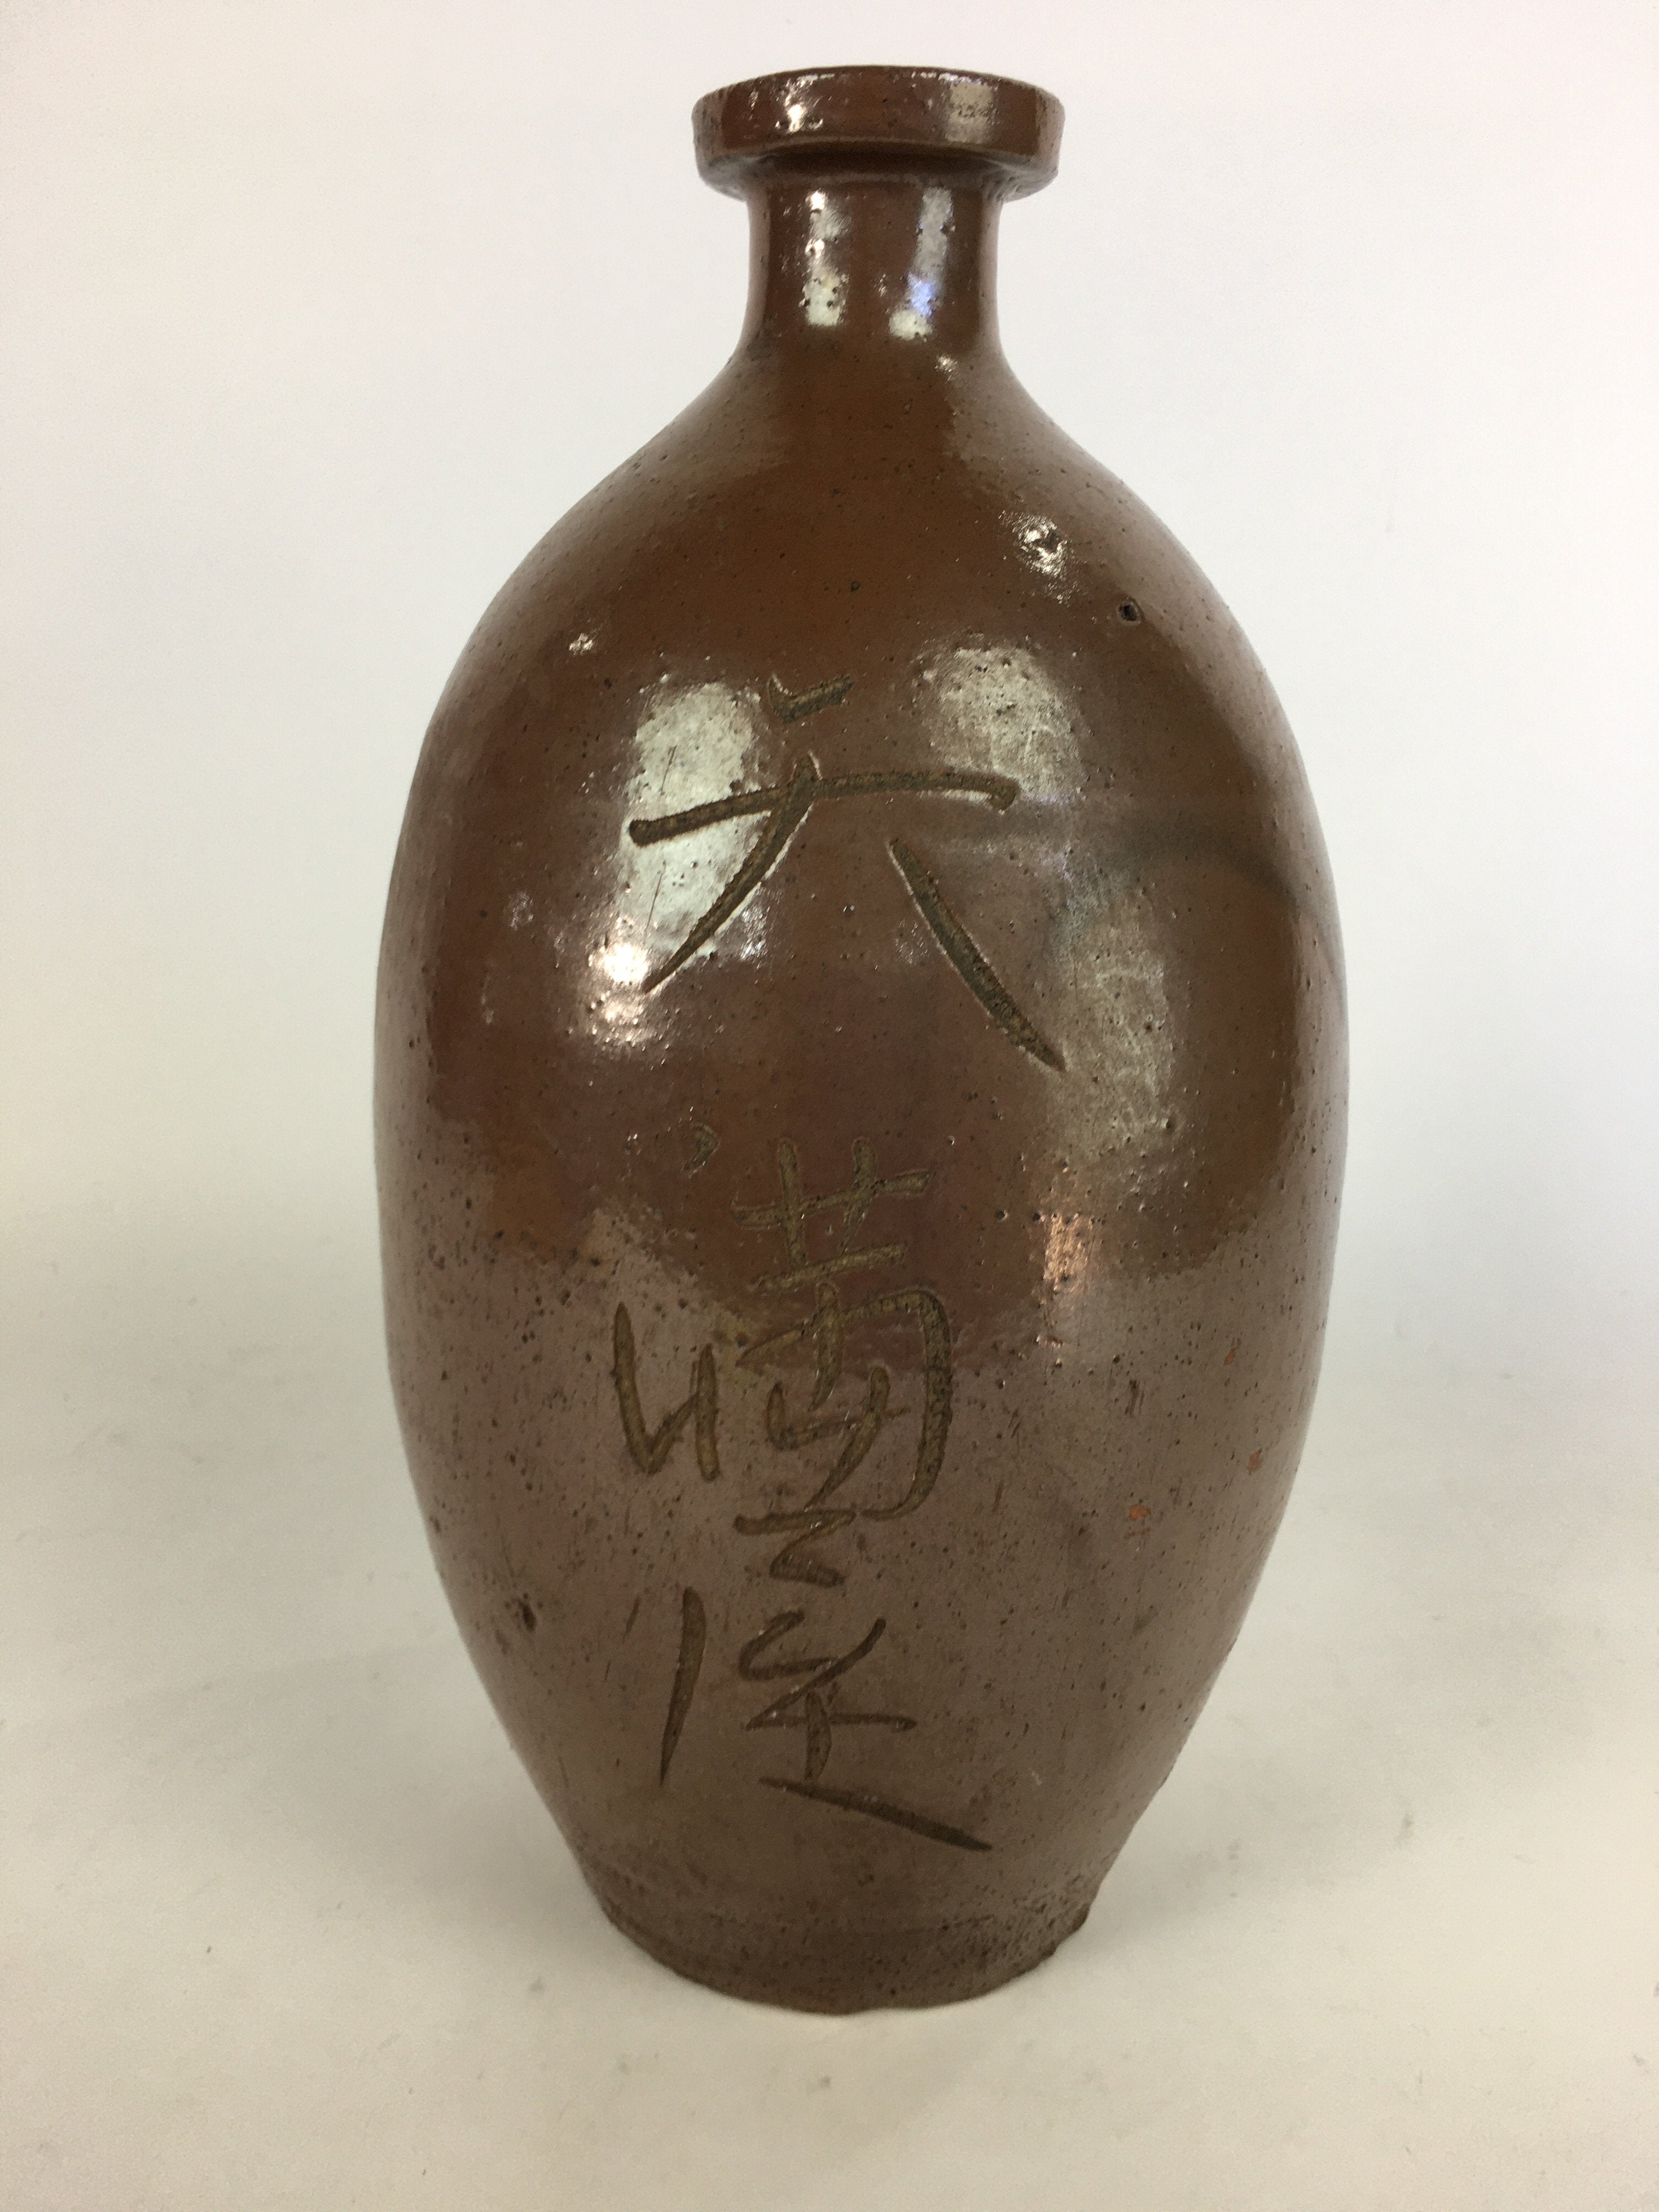 Antique Japanese Ceramic Sake Bottle Tokkuri Pottery Kayoi-Tokkuri Brown TS285